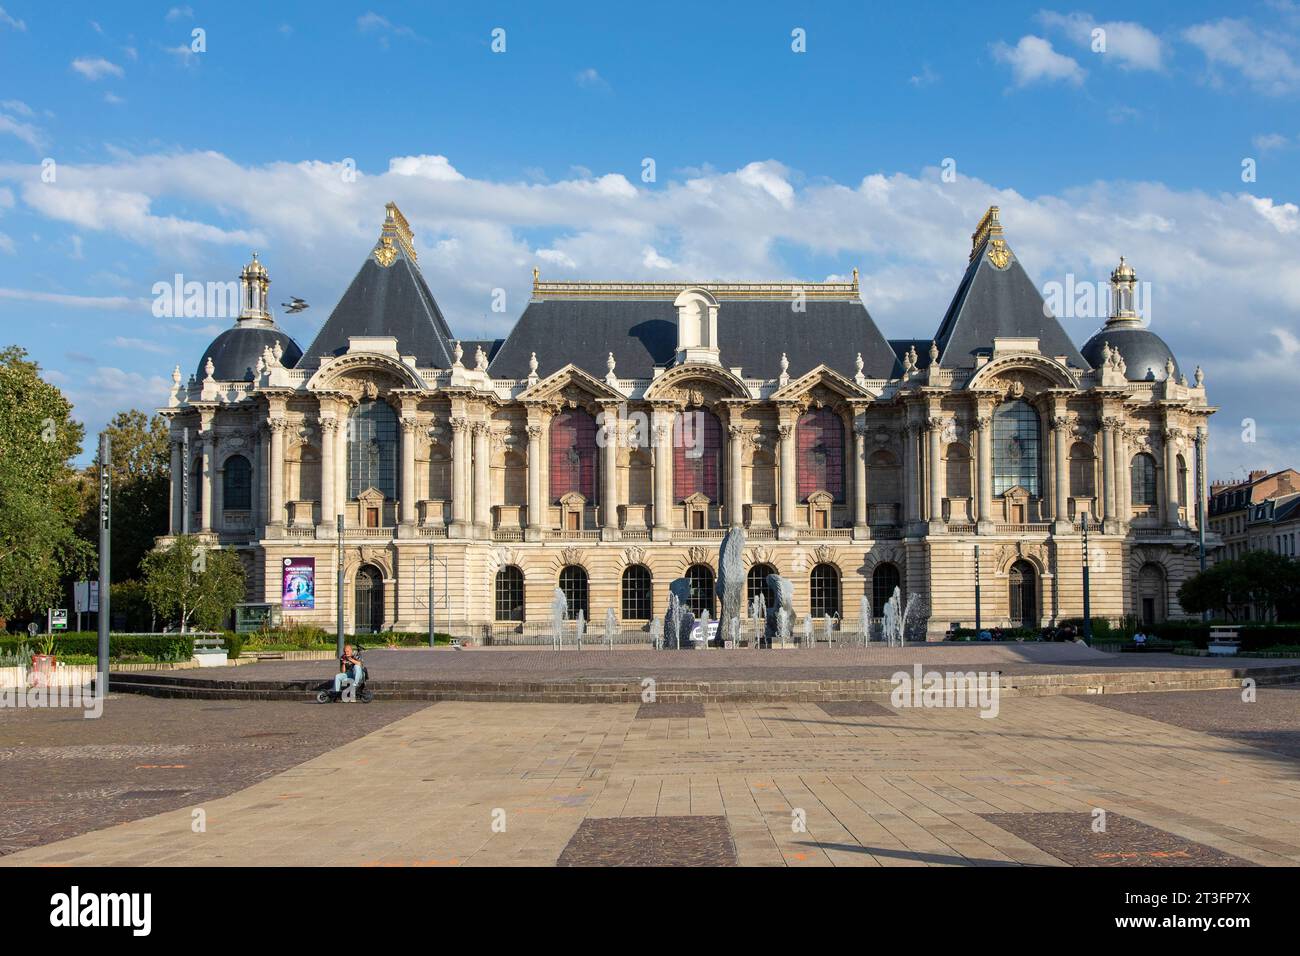 France, Nord, Lille, Place de la Republique, Palace of Fine Arts Stock Photo